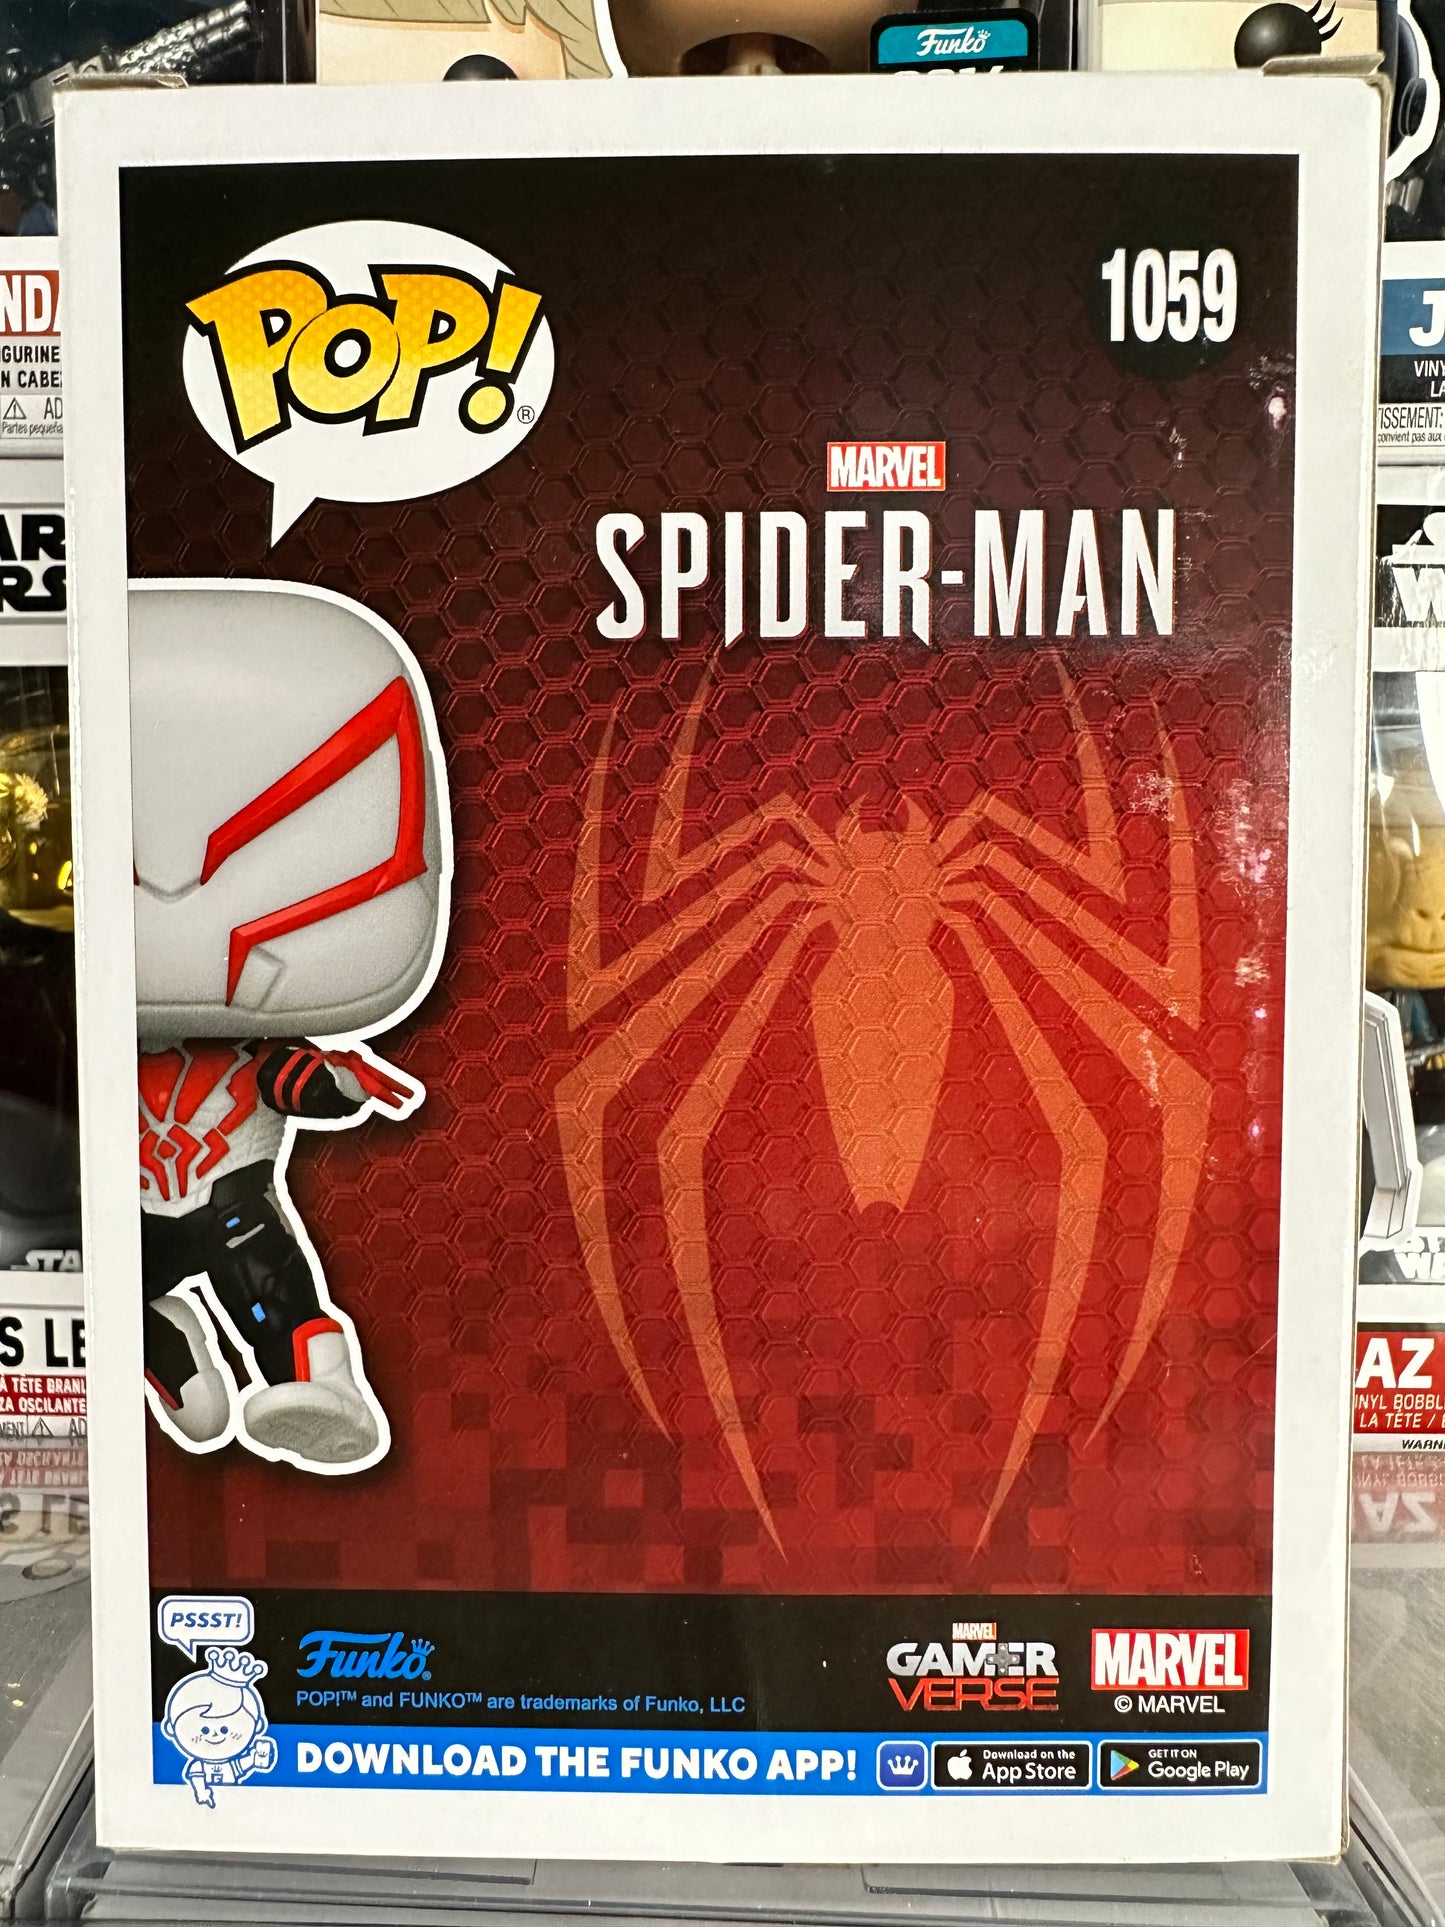 Marvel Spider-Man - Spider-Man 2099 (1059) (2022 Summer Convention)